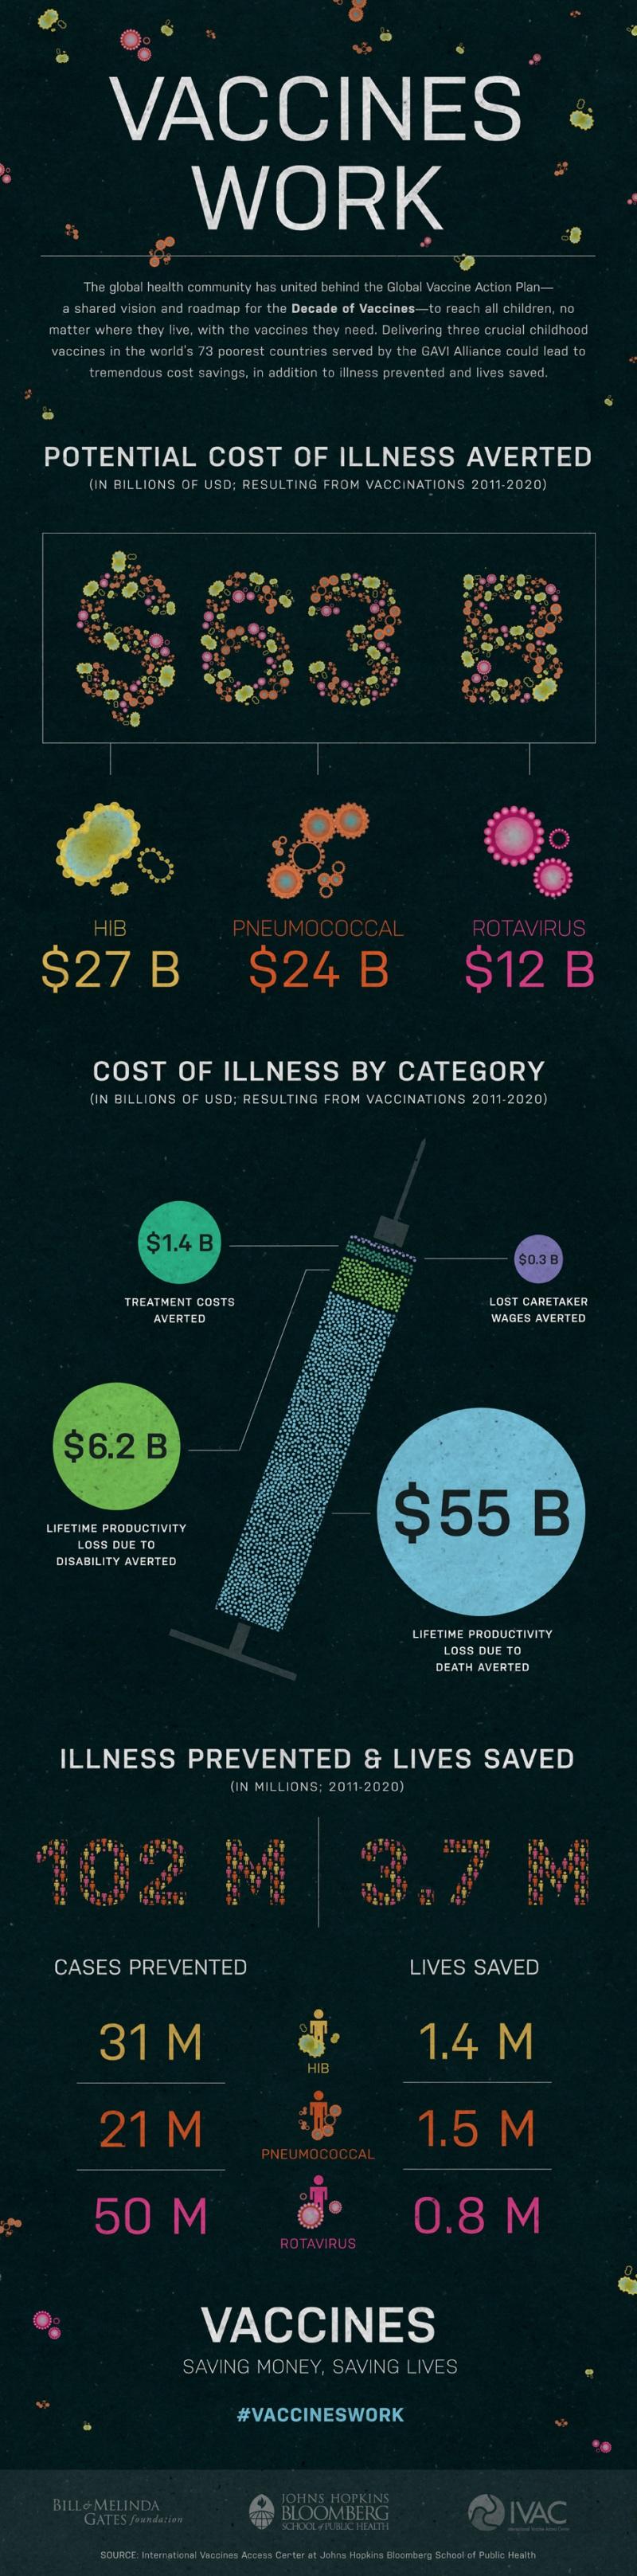 Le vrai coût de l’absence de vaccinnation